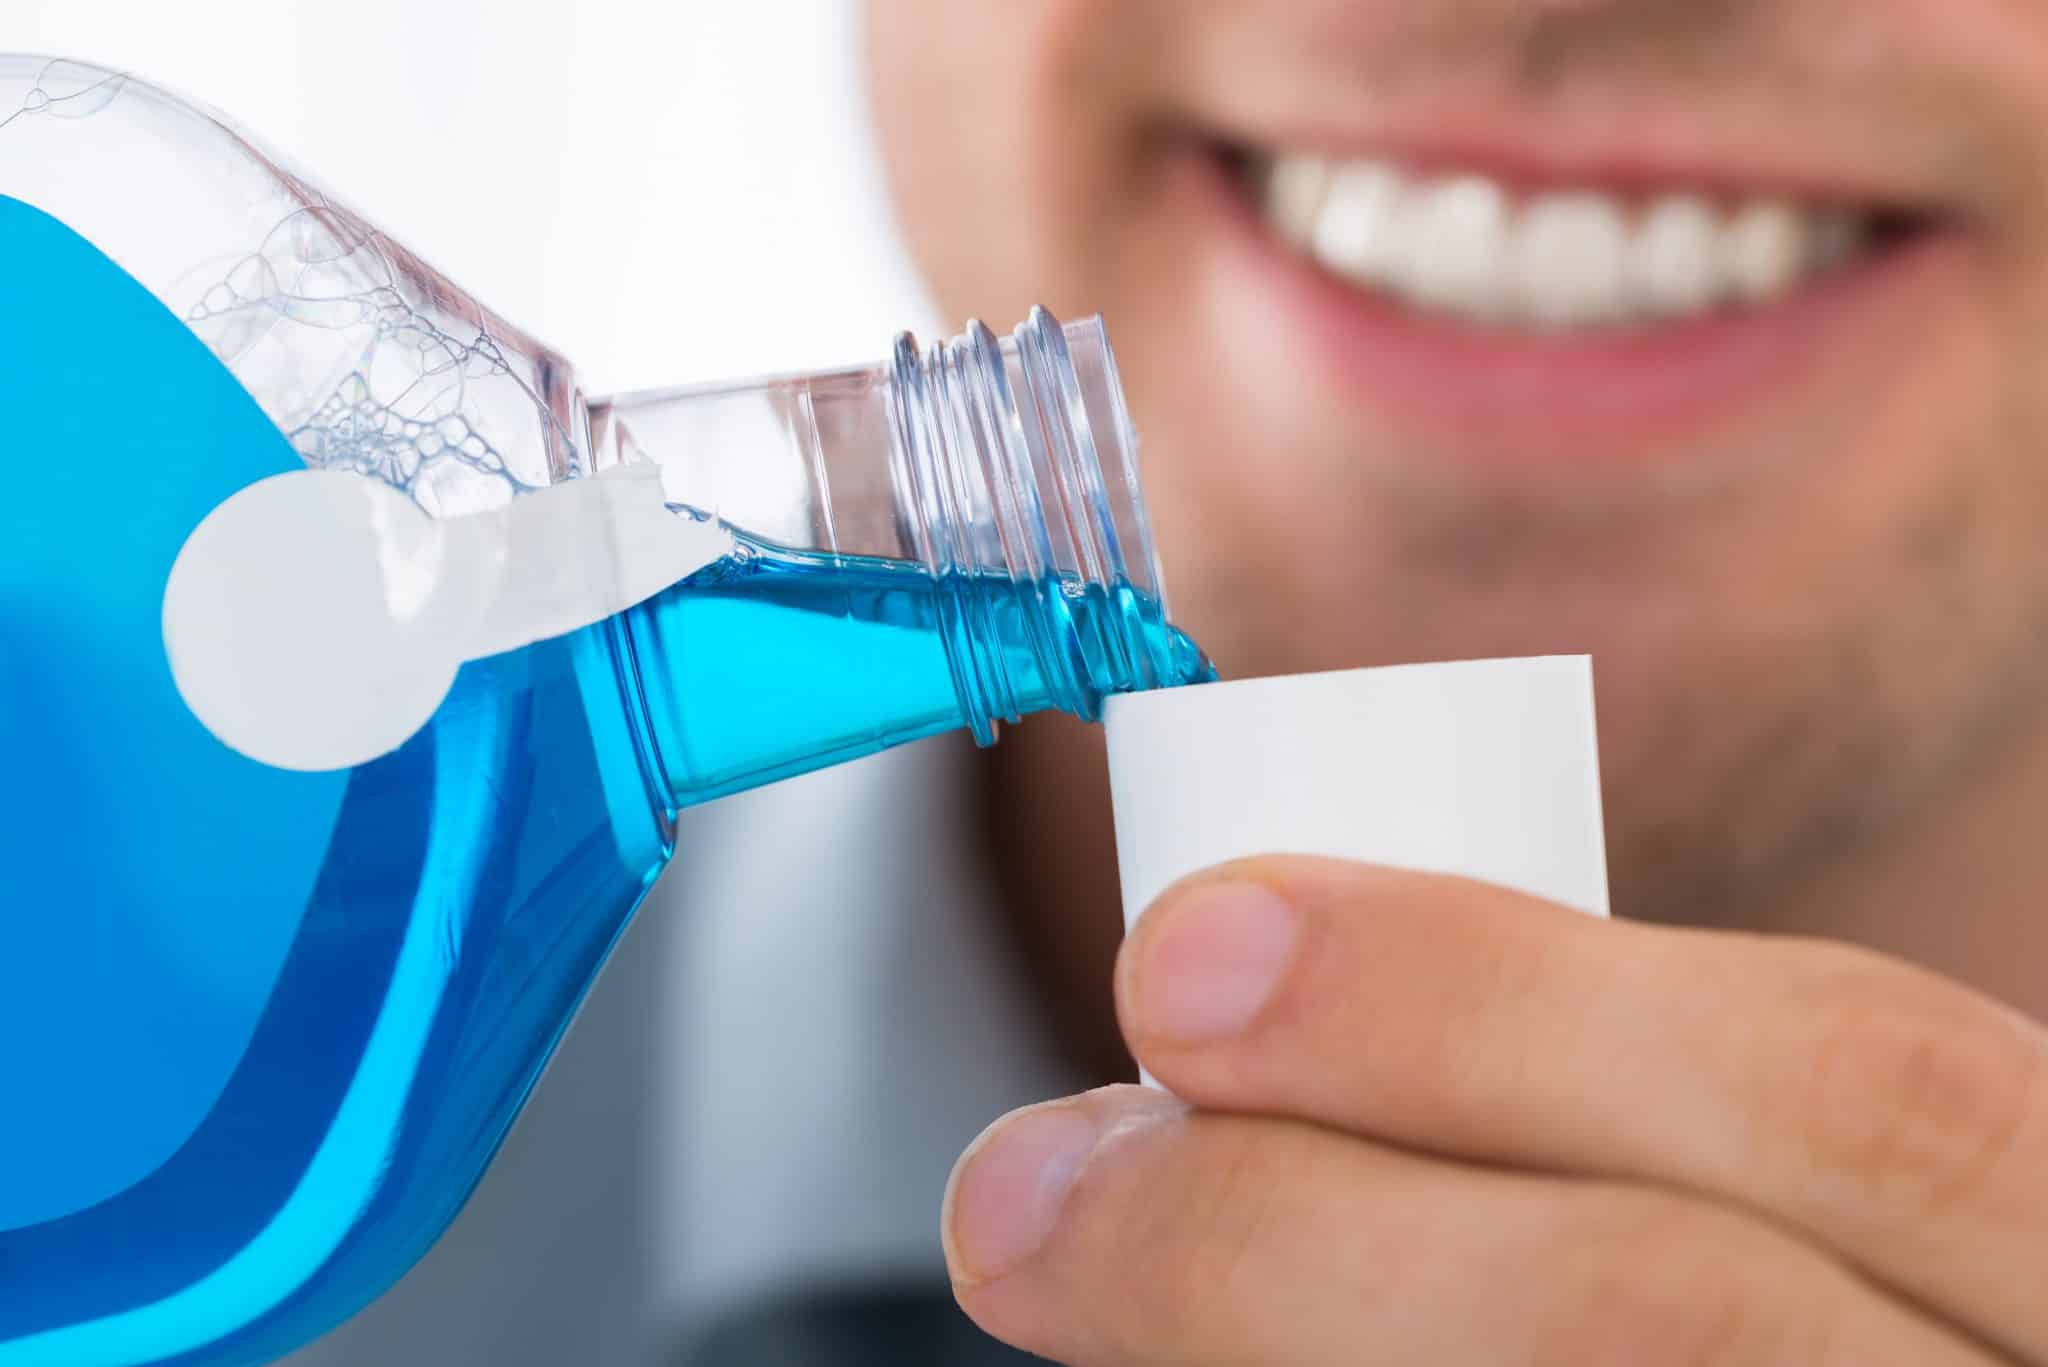 Ein junger Mann füllt ein blaues Mundspülprodukt in den Verschlussbecher der Produktflasche.